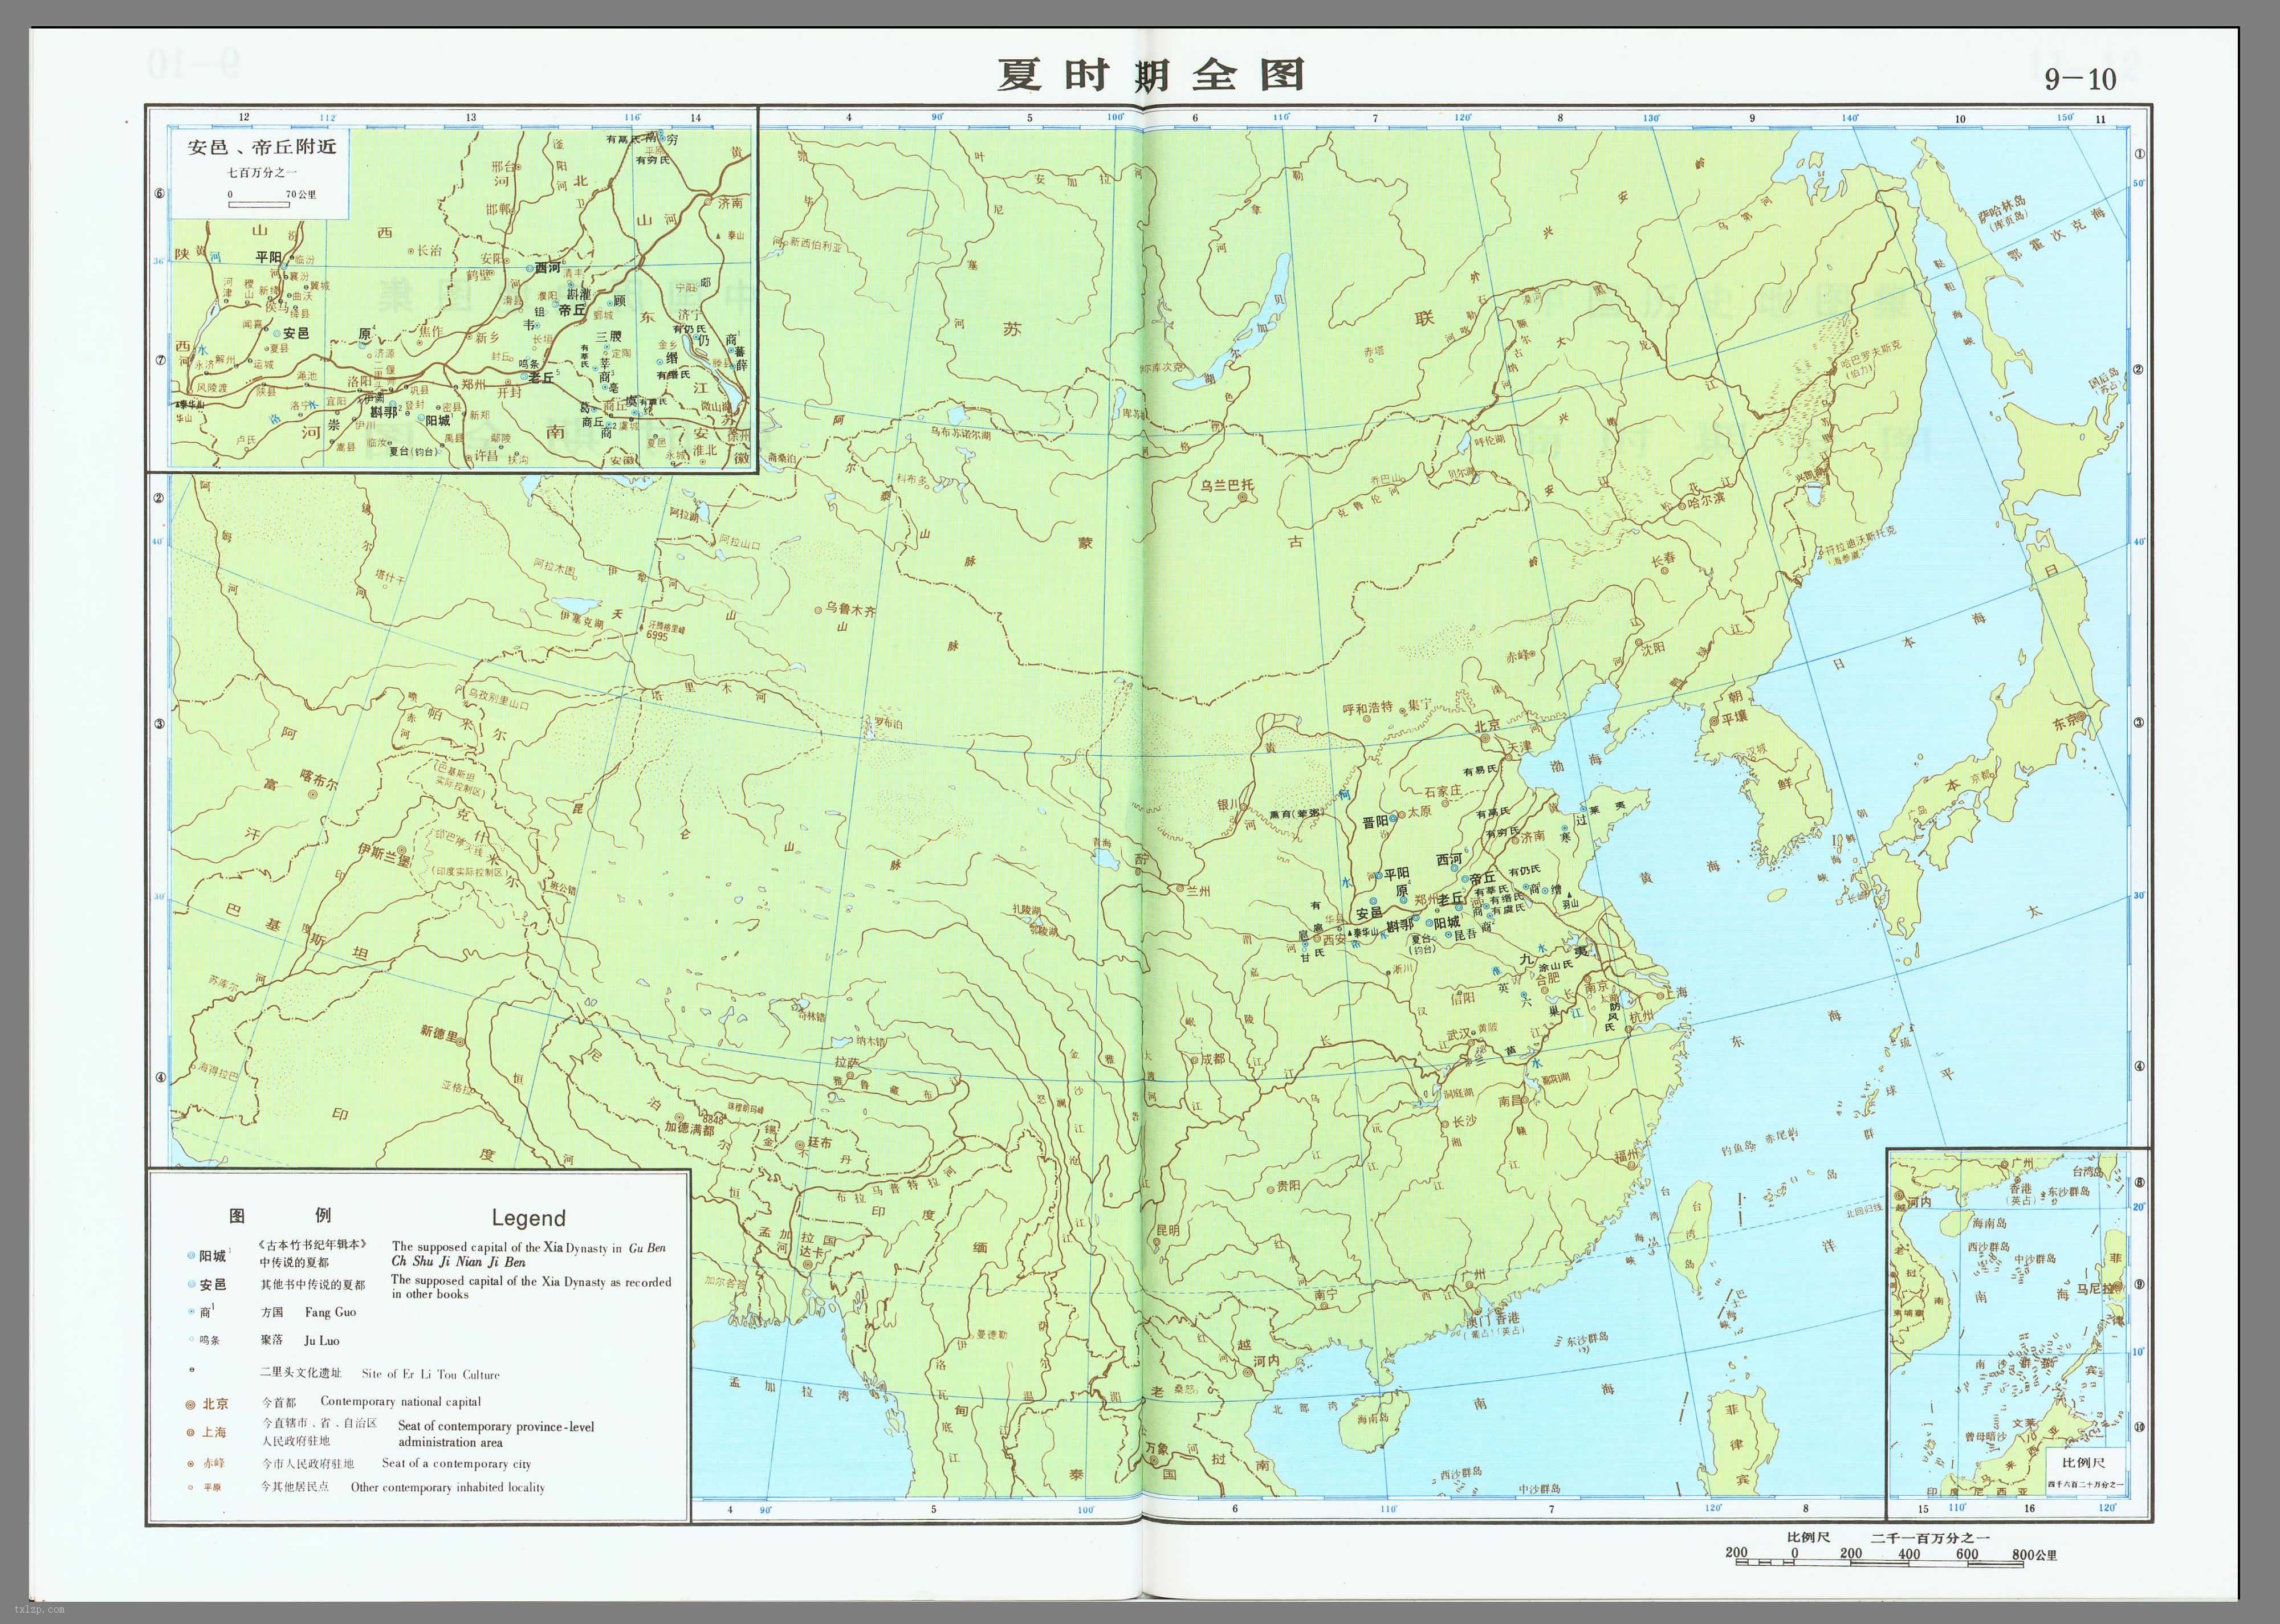 >>下载本组地图高清版及本站整理的15g中国历史地图资源包